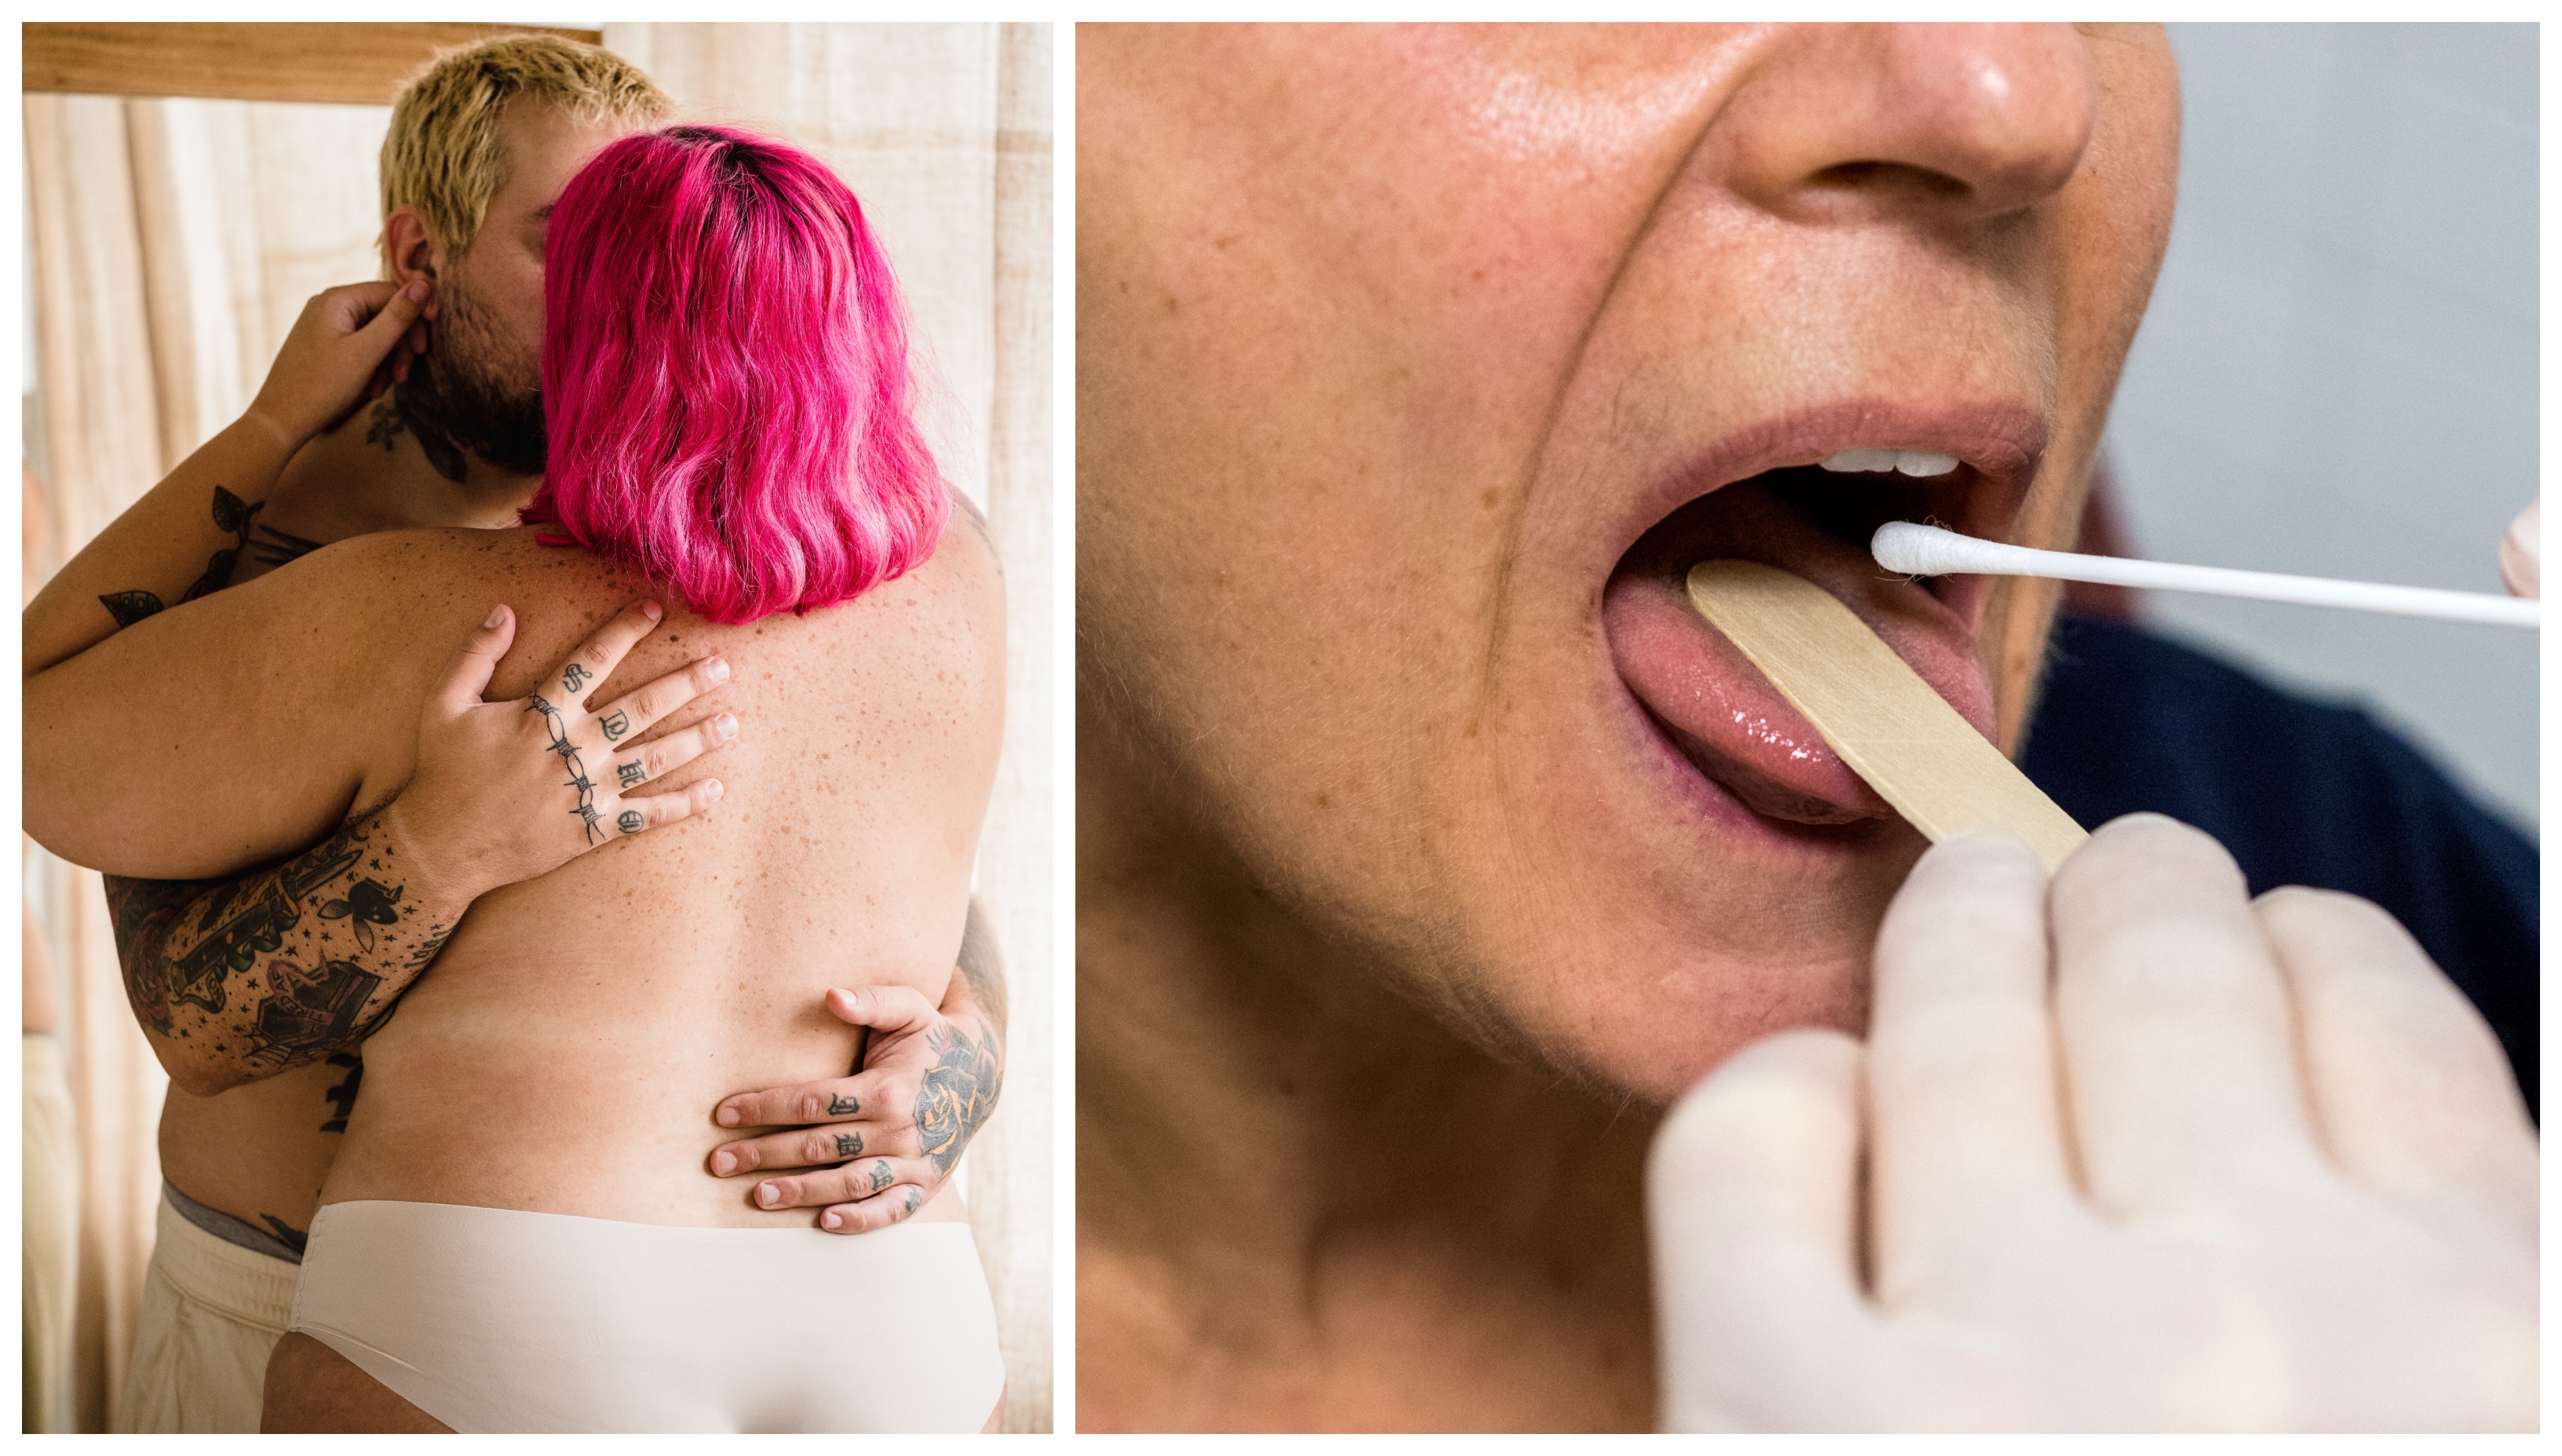 Kan man få en könssjukdom i munnen – och hur upptäcker man det i så fall?